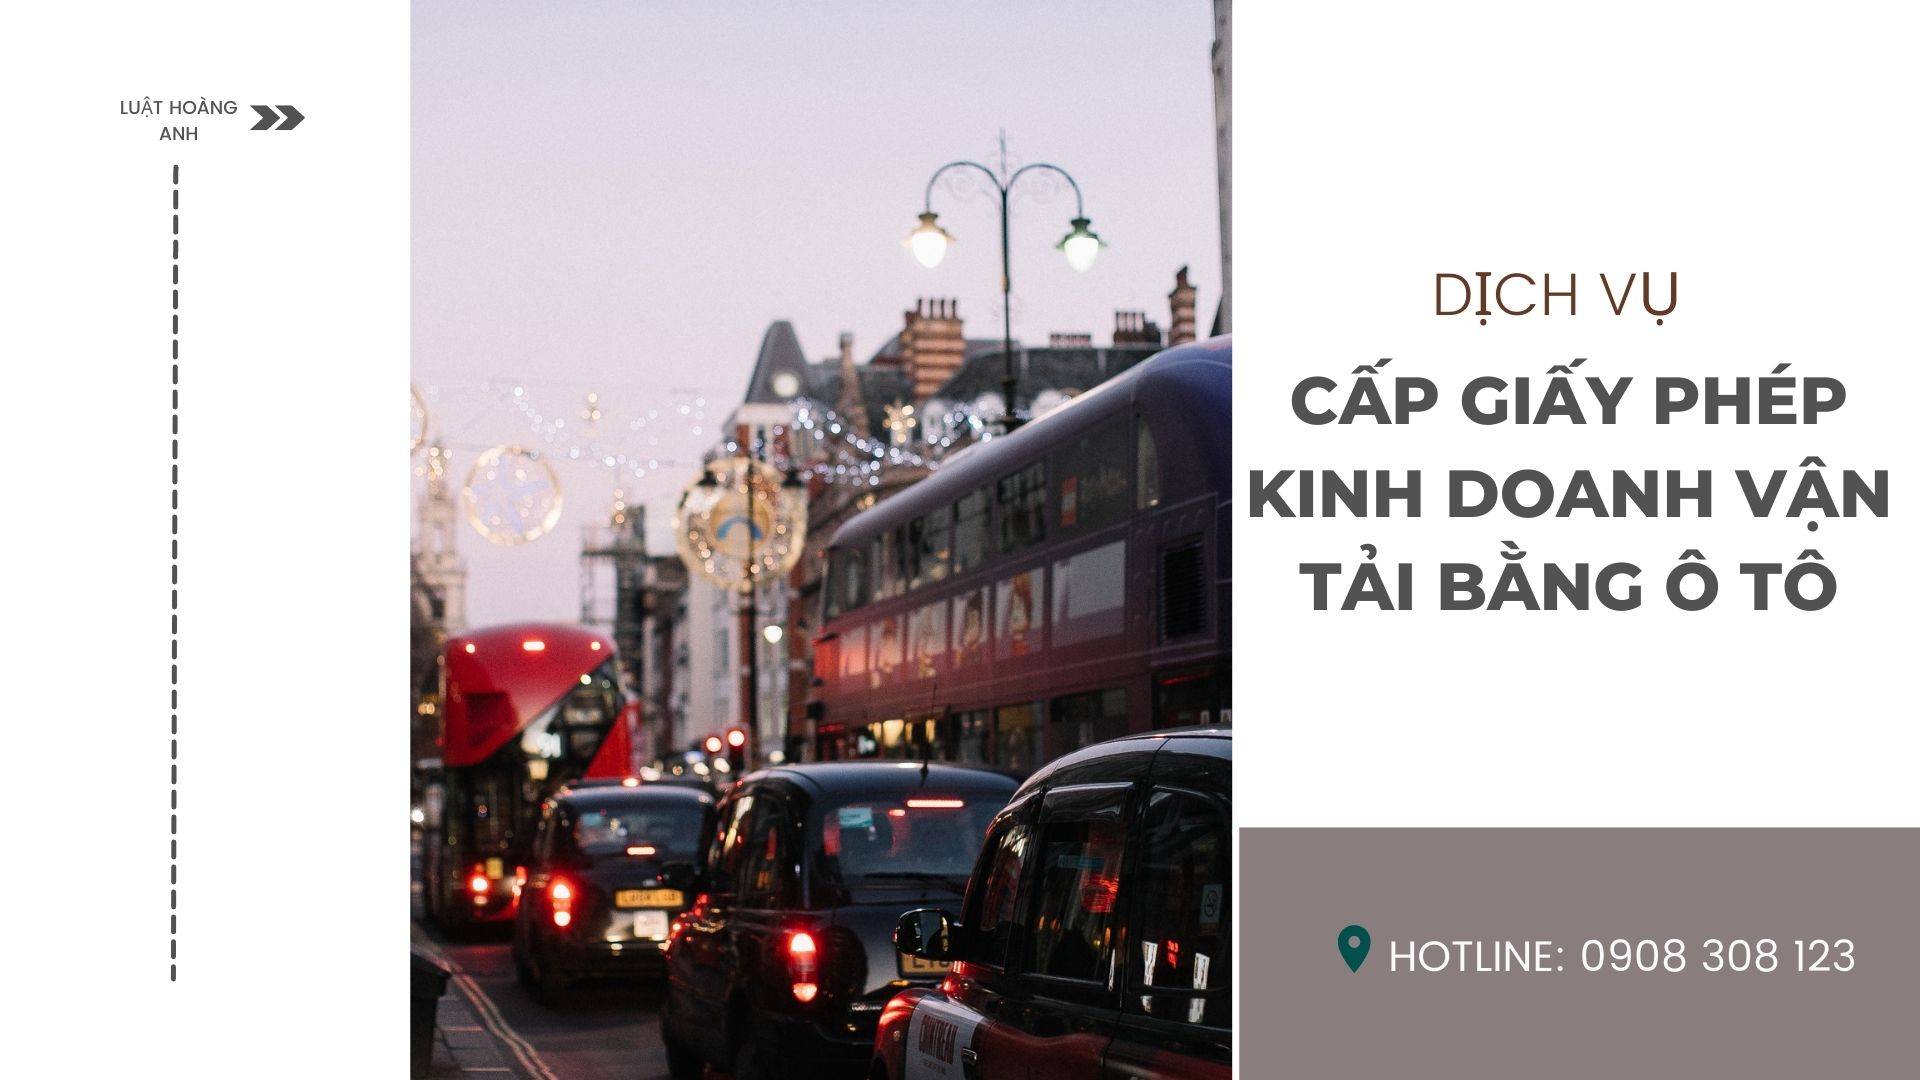 Dịch vụ cấp giấy phép kinh doanh vận tải bằng ô tô tại tỉnh Khánh Hòa